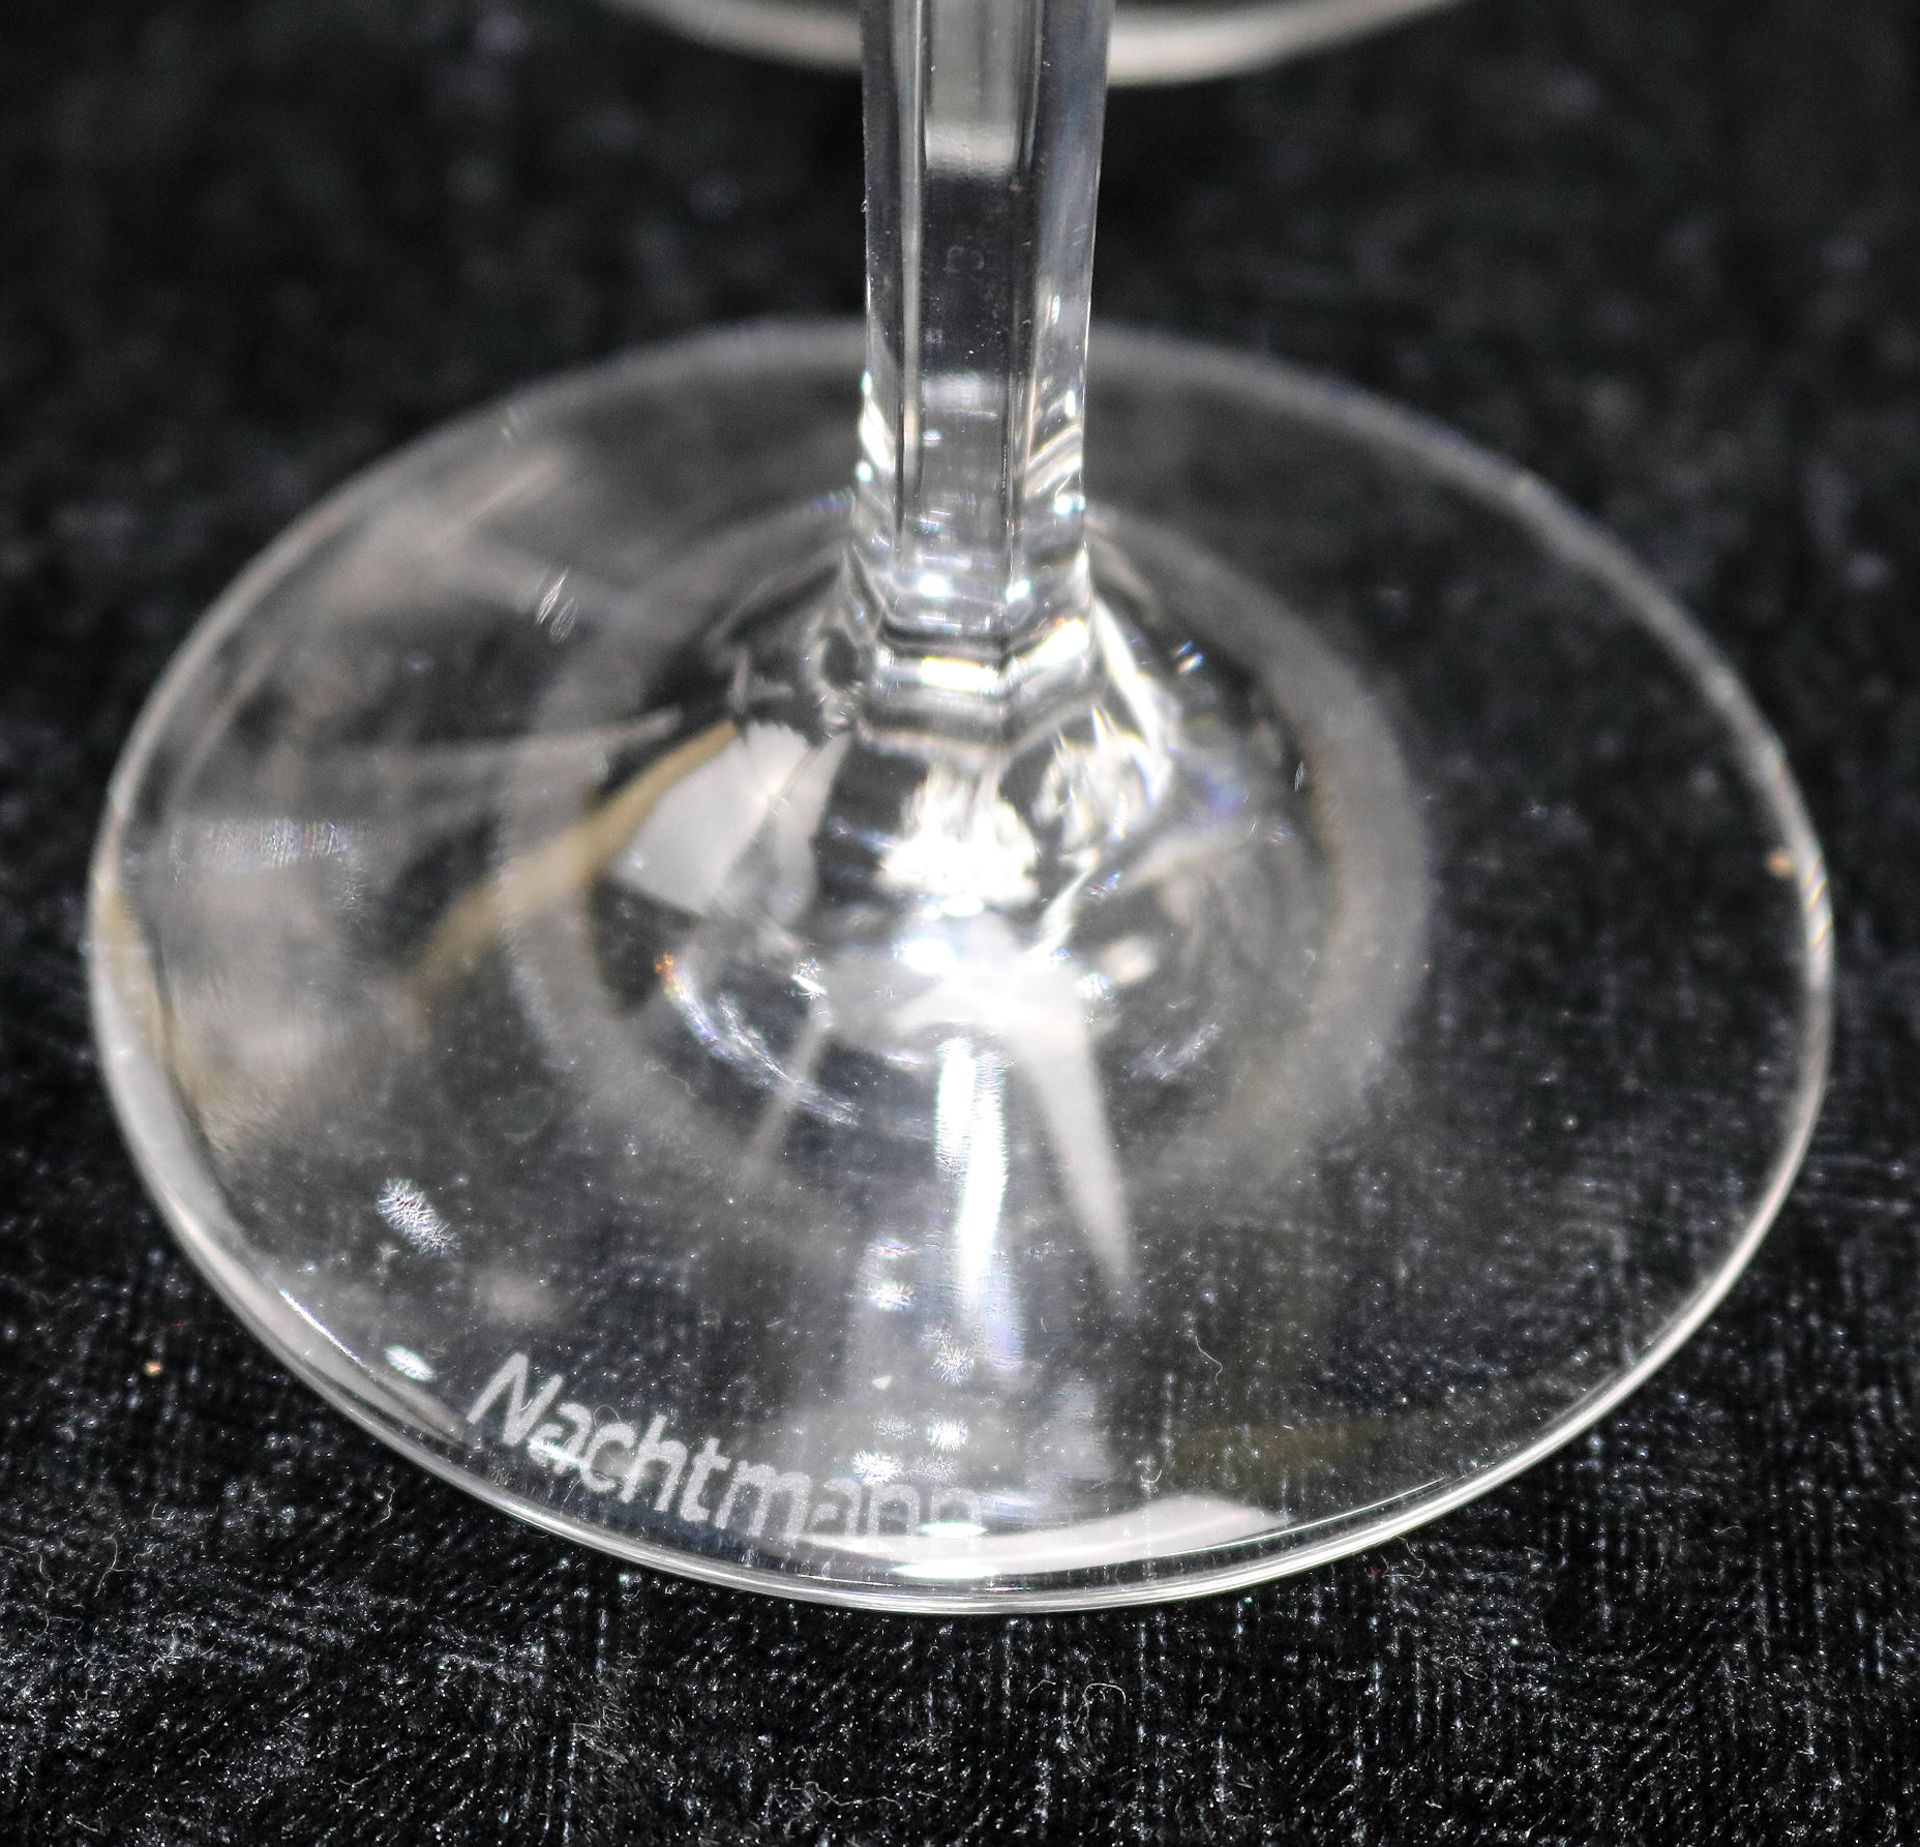 Nachtmann, 8 Kristall-Sektgläser, Serie "Fleurie", gemarkt, 20. Jh. - Image 3 of 3